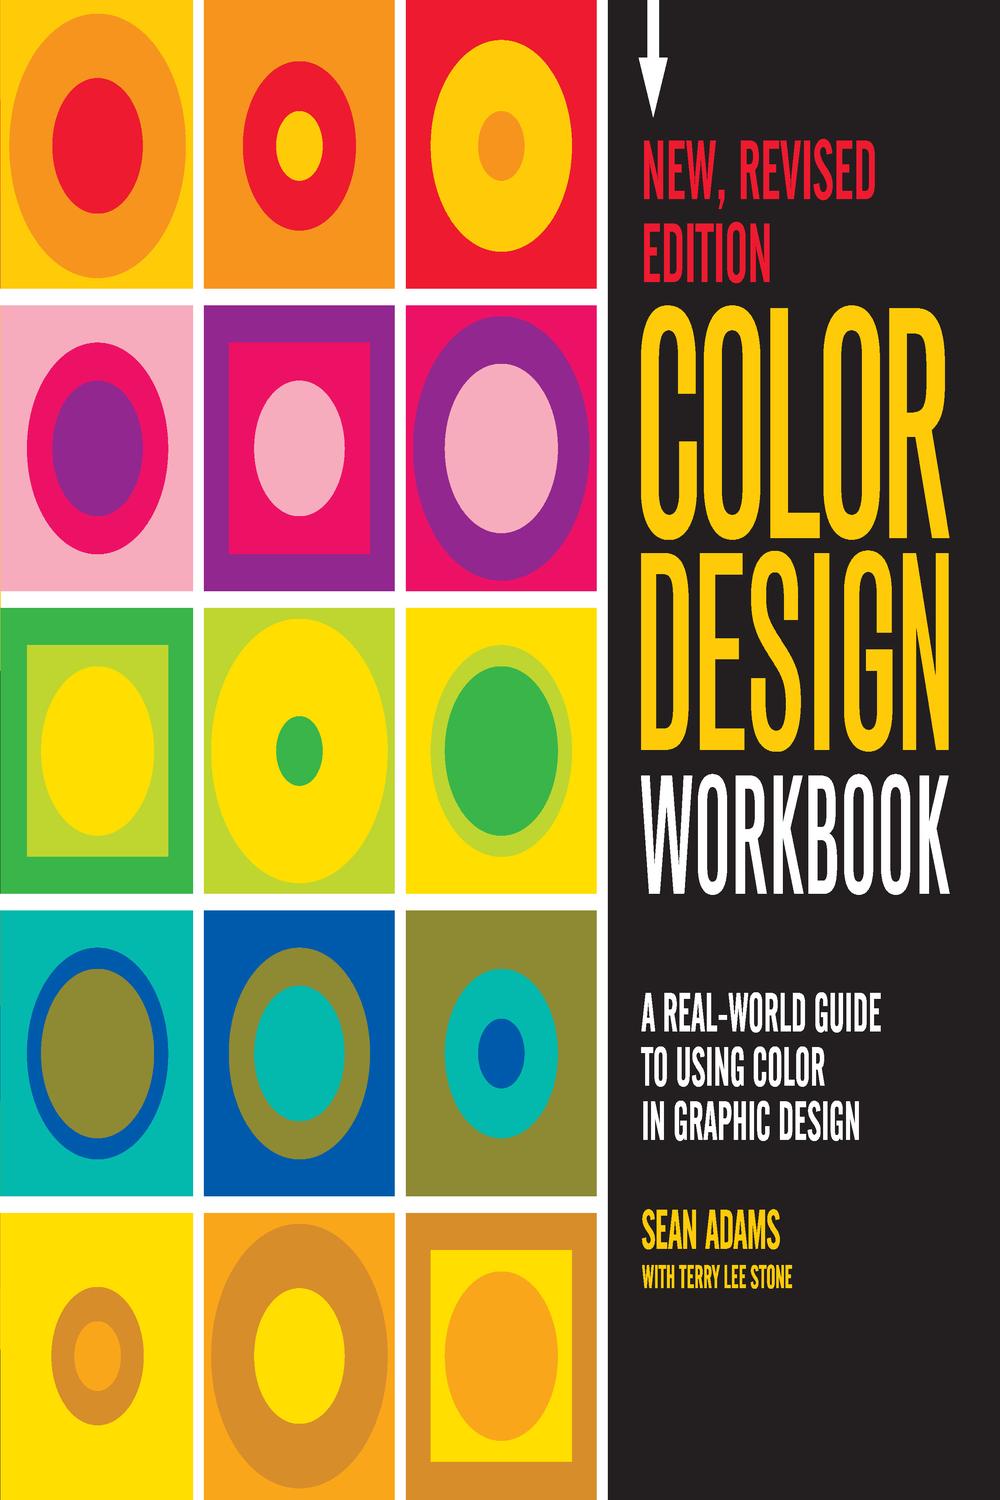 Color Design Workbook: New, Revised Edition - Sean Adams